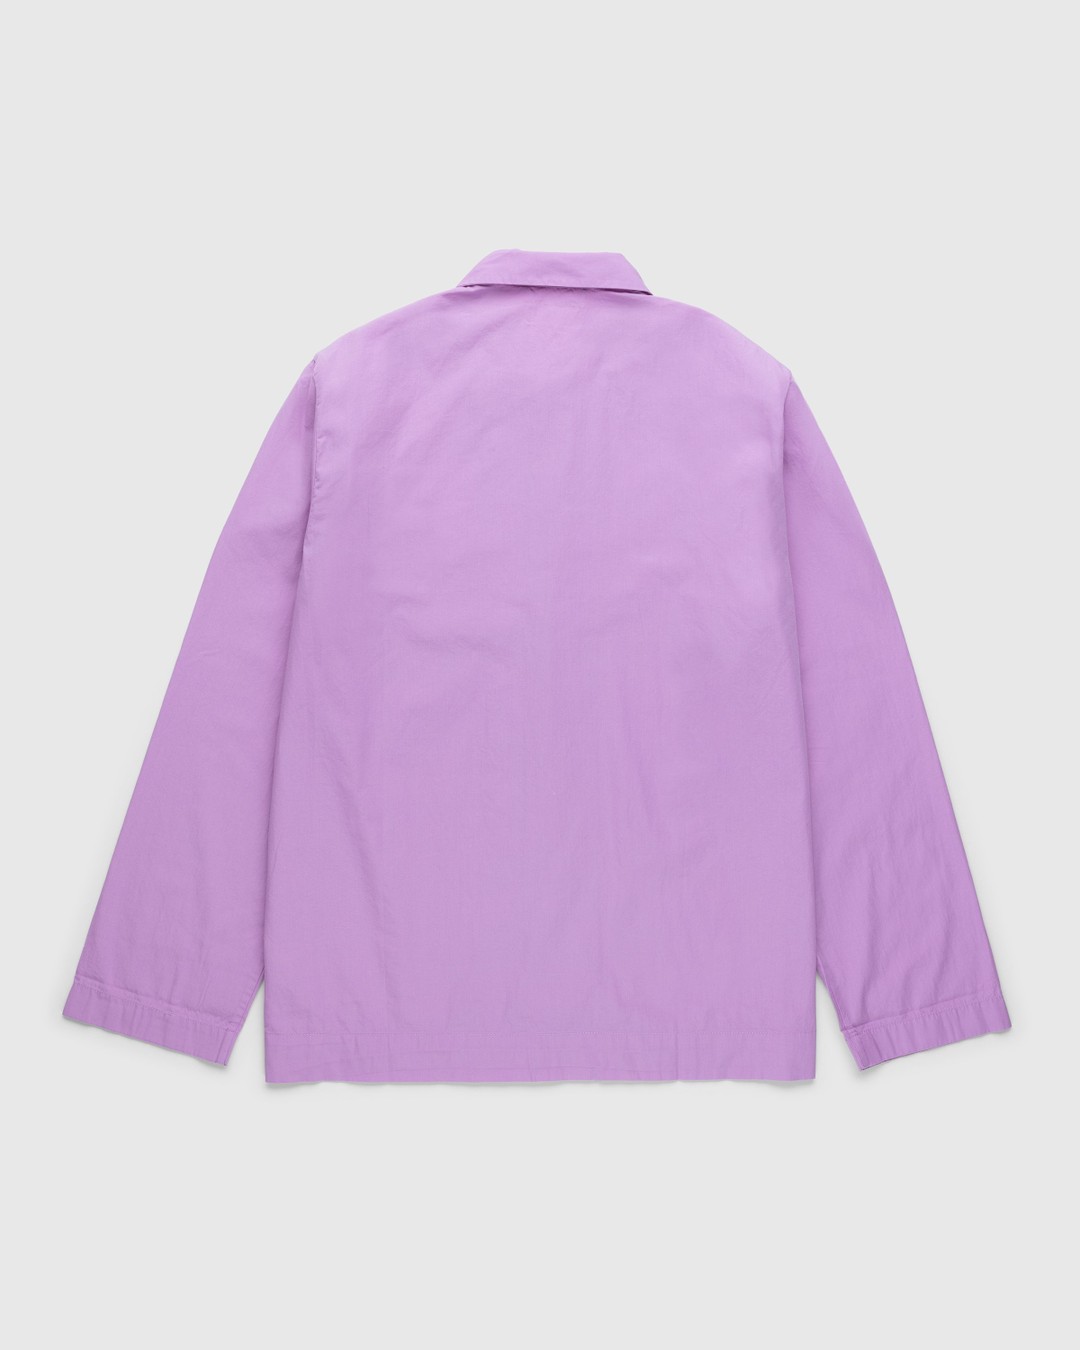 Tekla – Cotton Poplin Pyjamas Shirt Purple Pink - Pyjamas - Pink - Image 2